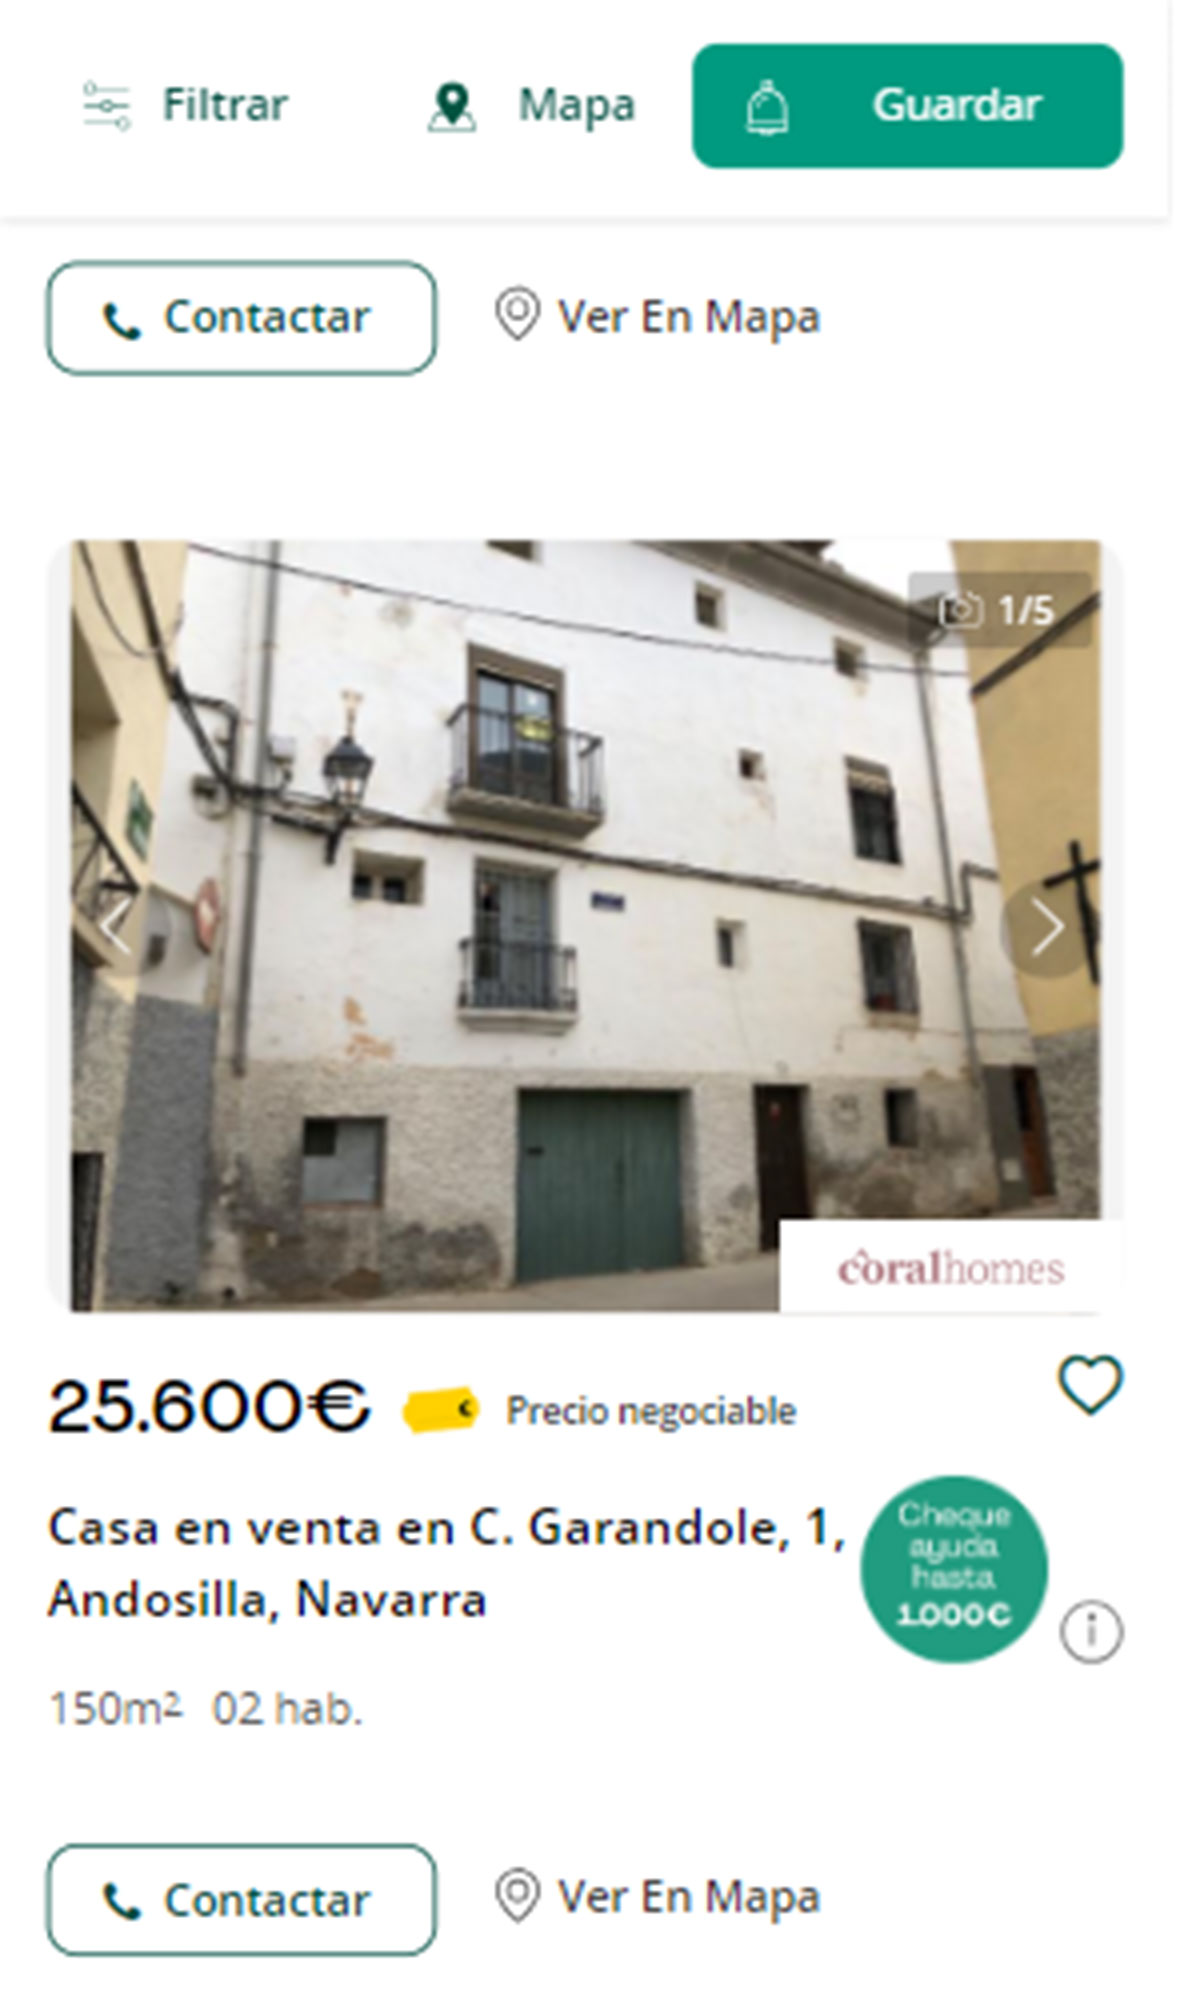 Piso en Navarra por 25.600 euros